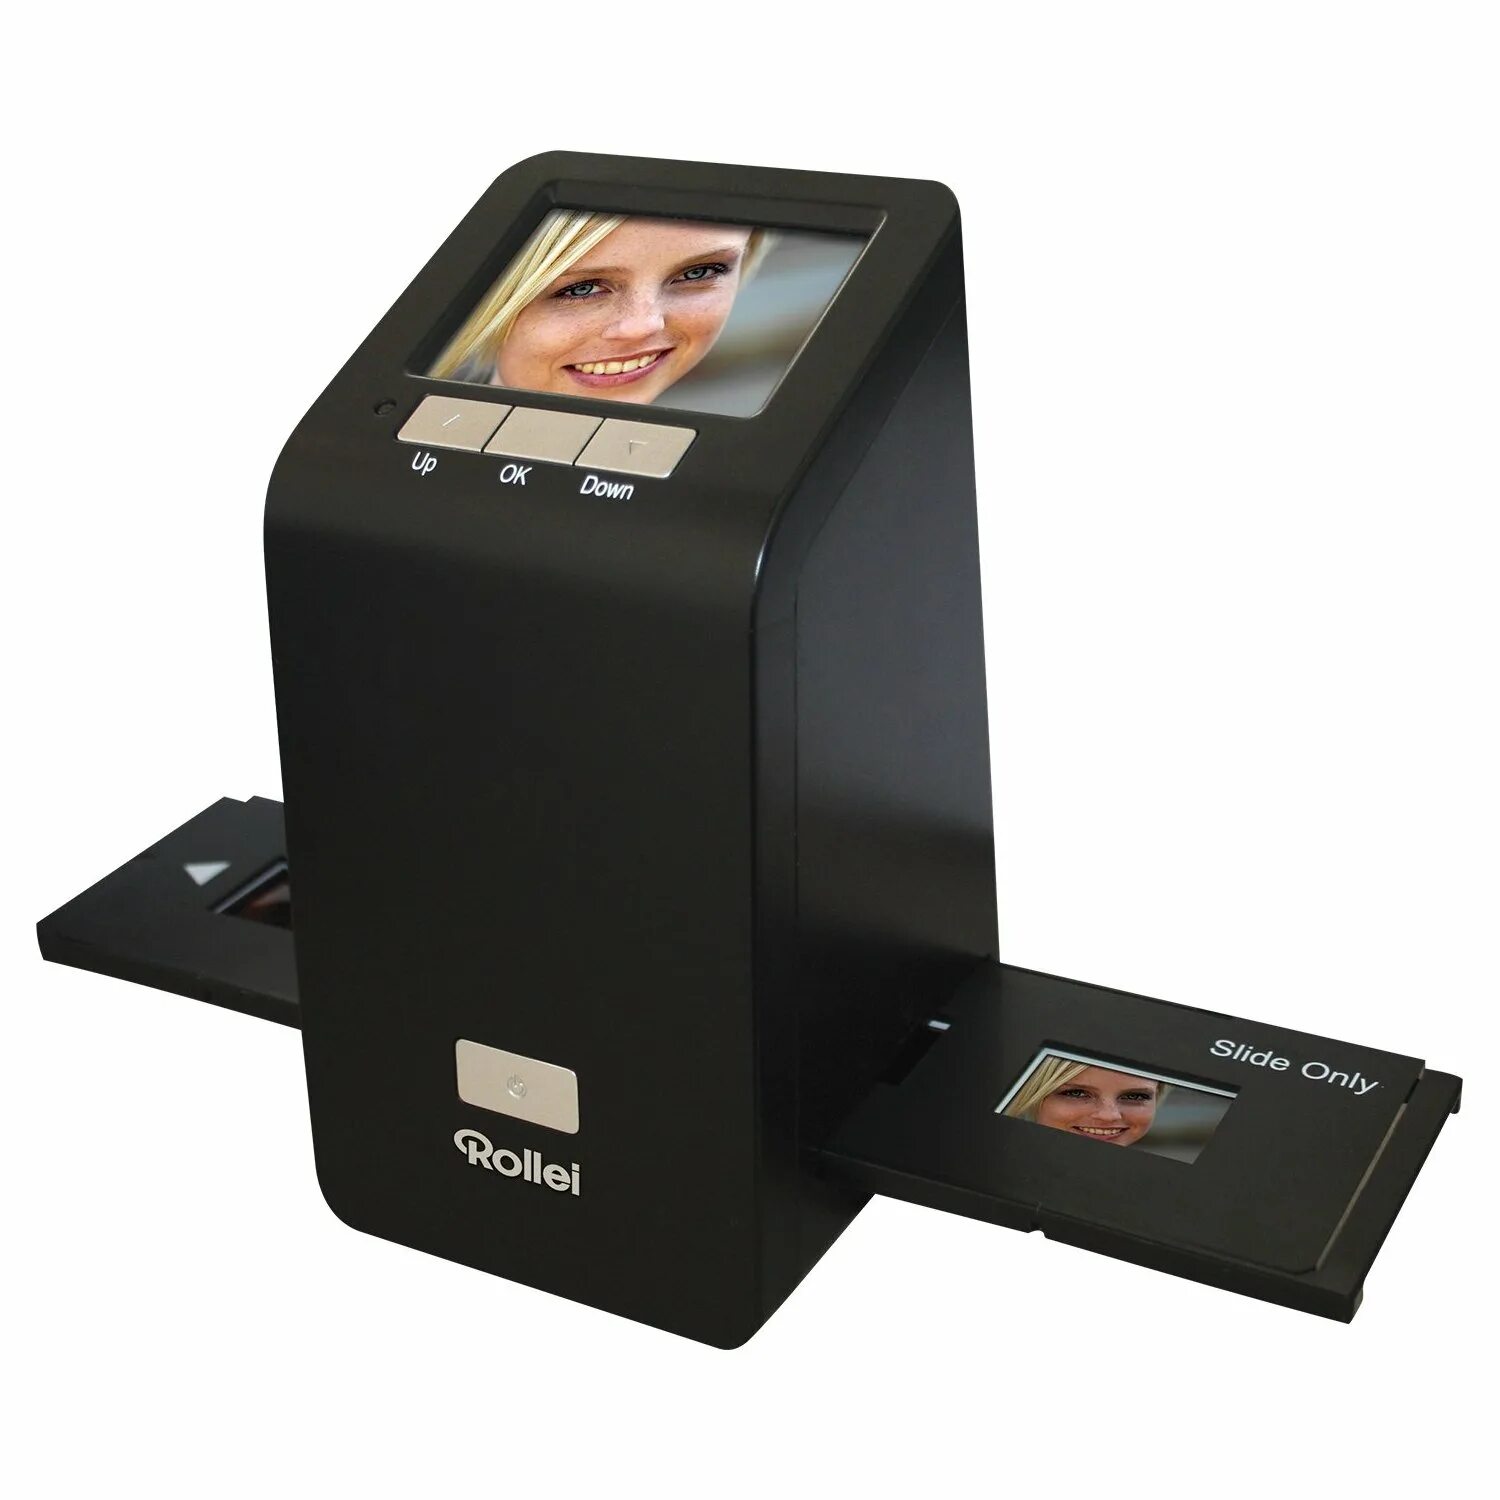 Сканер Ave ps900. Слайд сканеры для оцифровки фотопленок. Фотосканер s300p. Micro 4/3 слайд сканер. Сканер для телефона бесплатный документов андроид